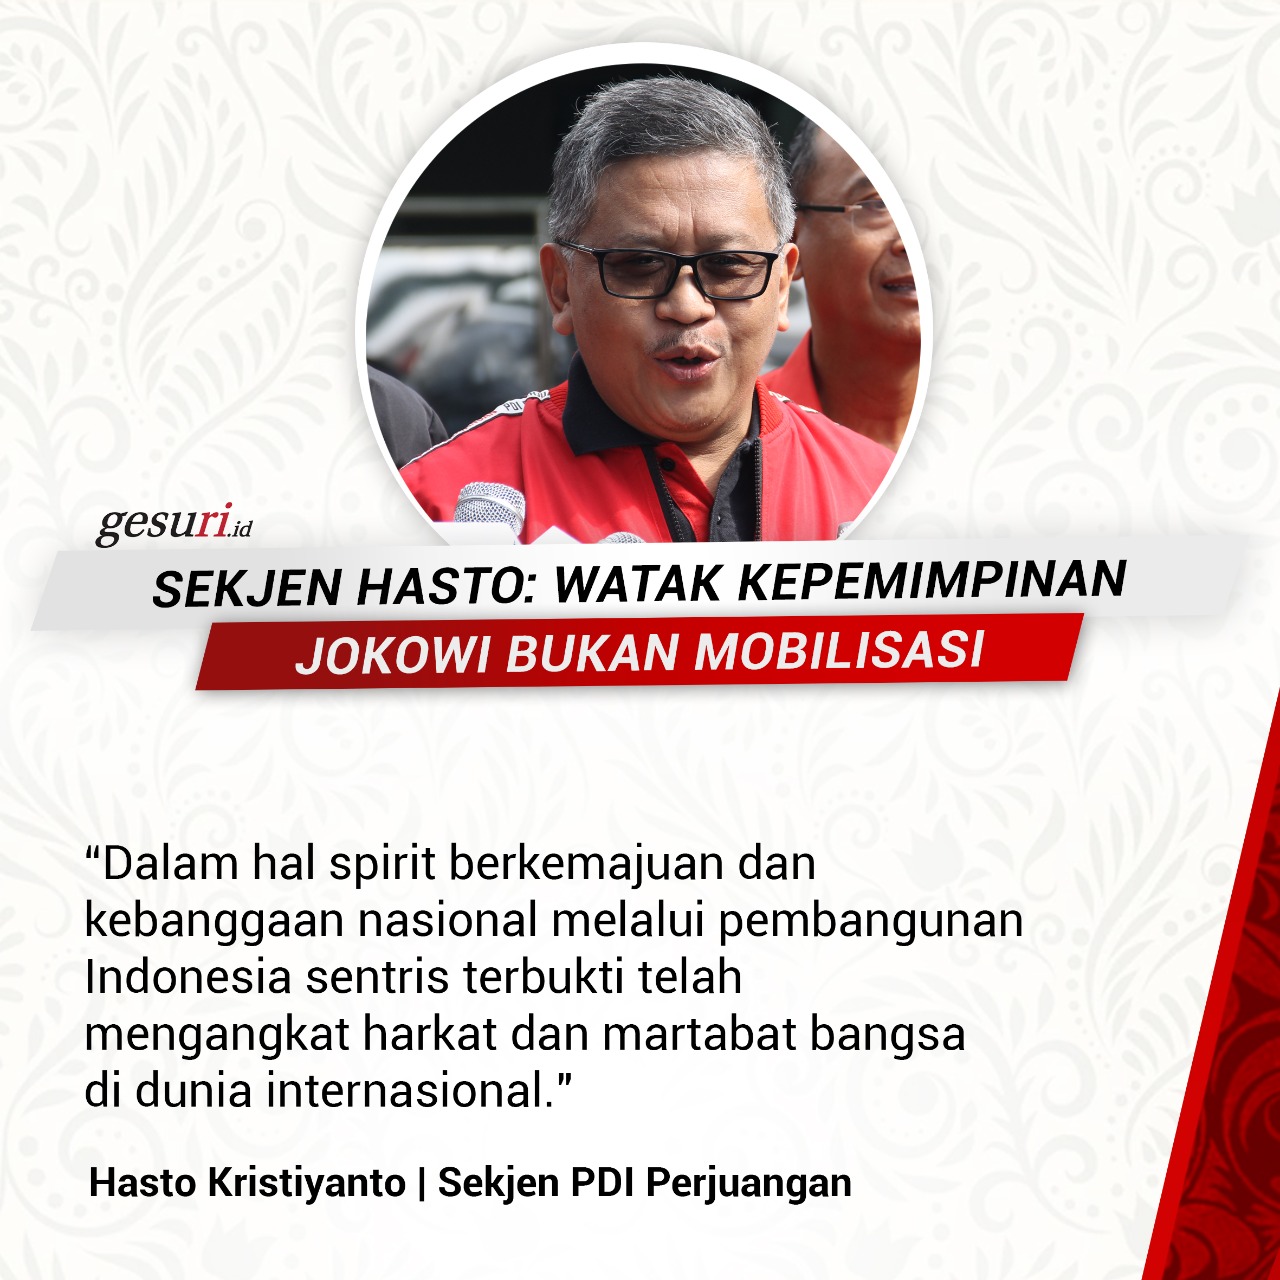 Hasto: Watak Kepemimpinan Jokowi Bukan Mobilisasi (3/8)